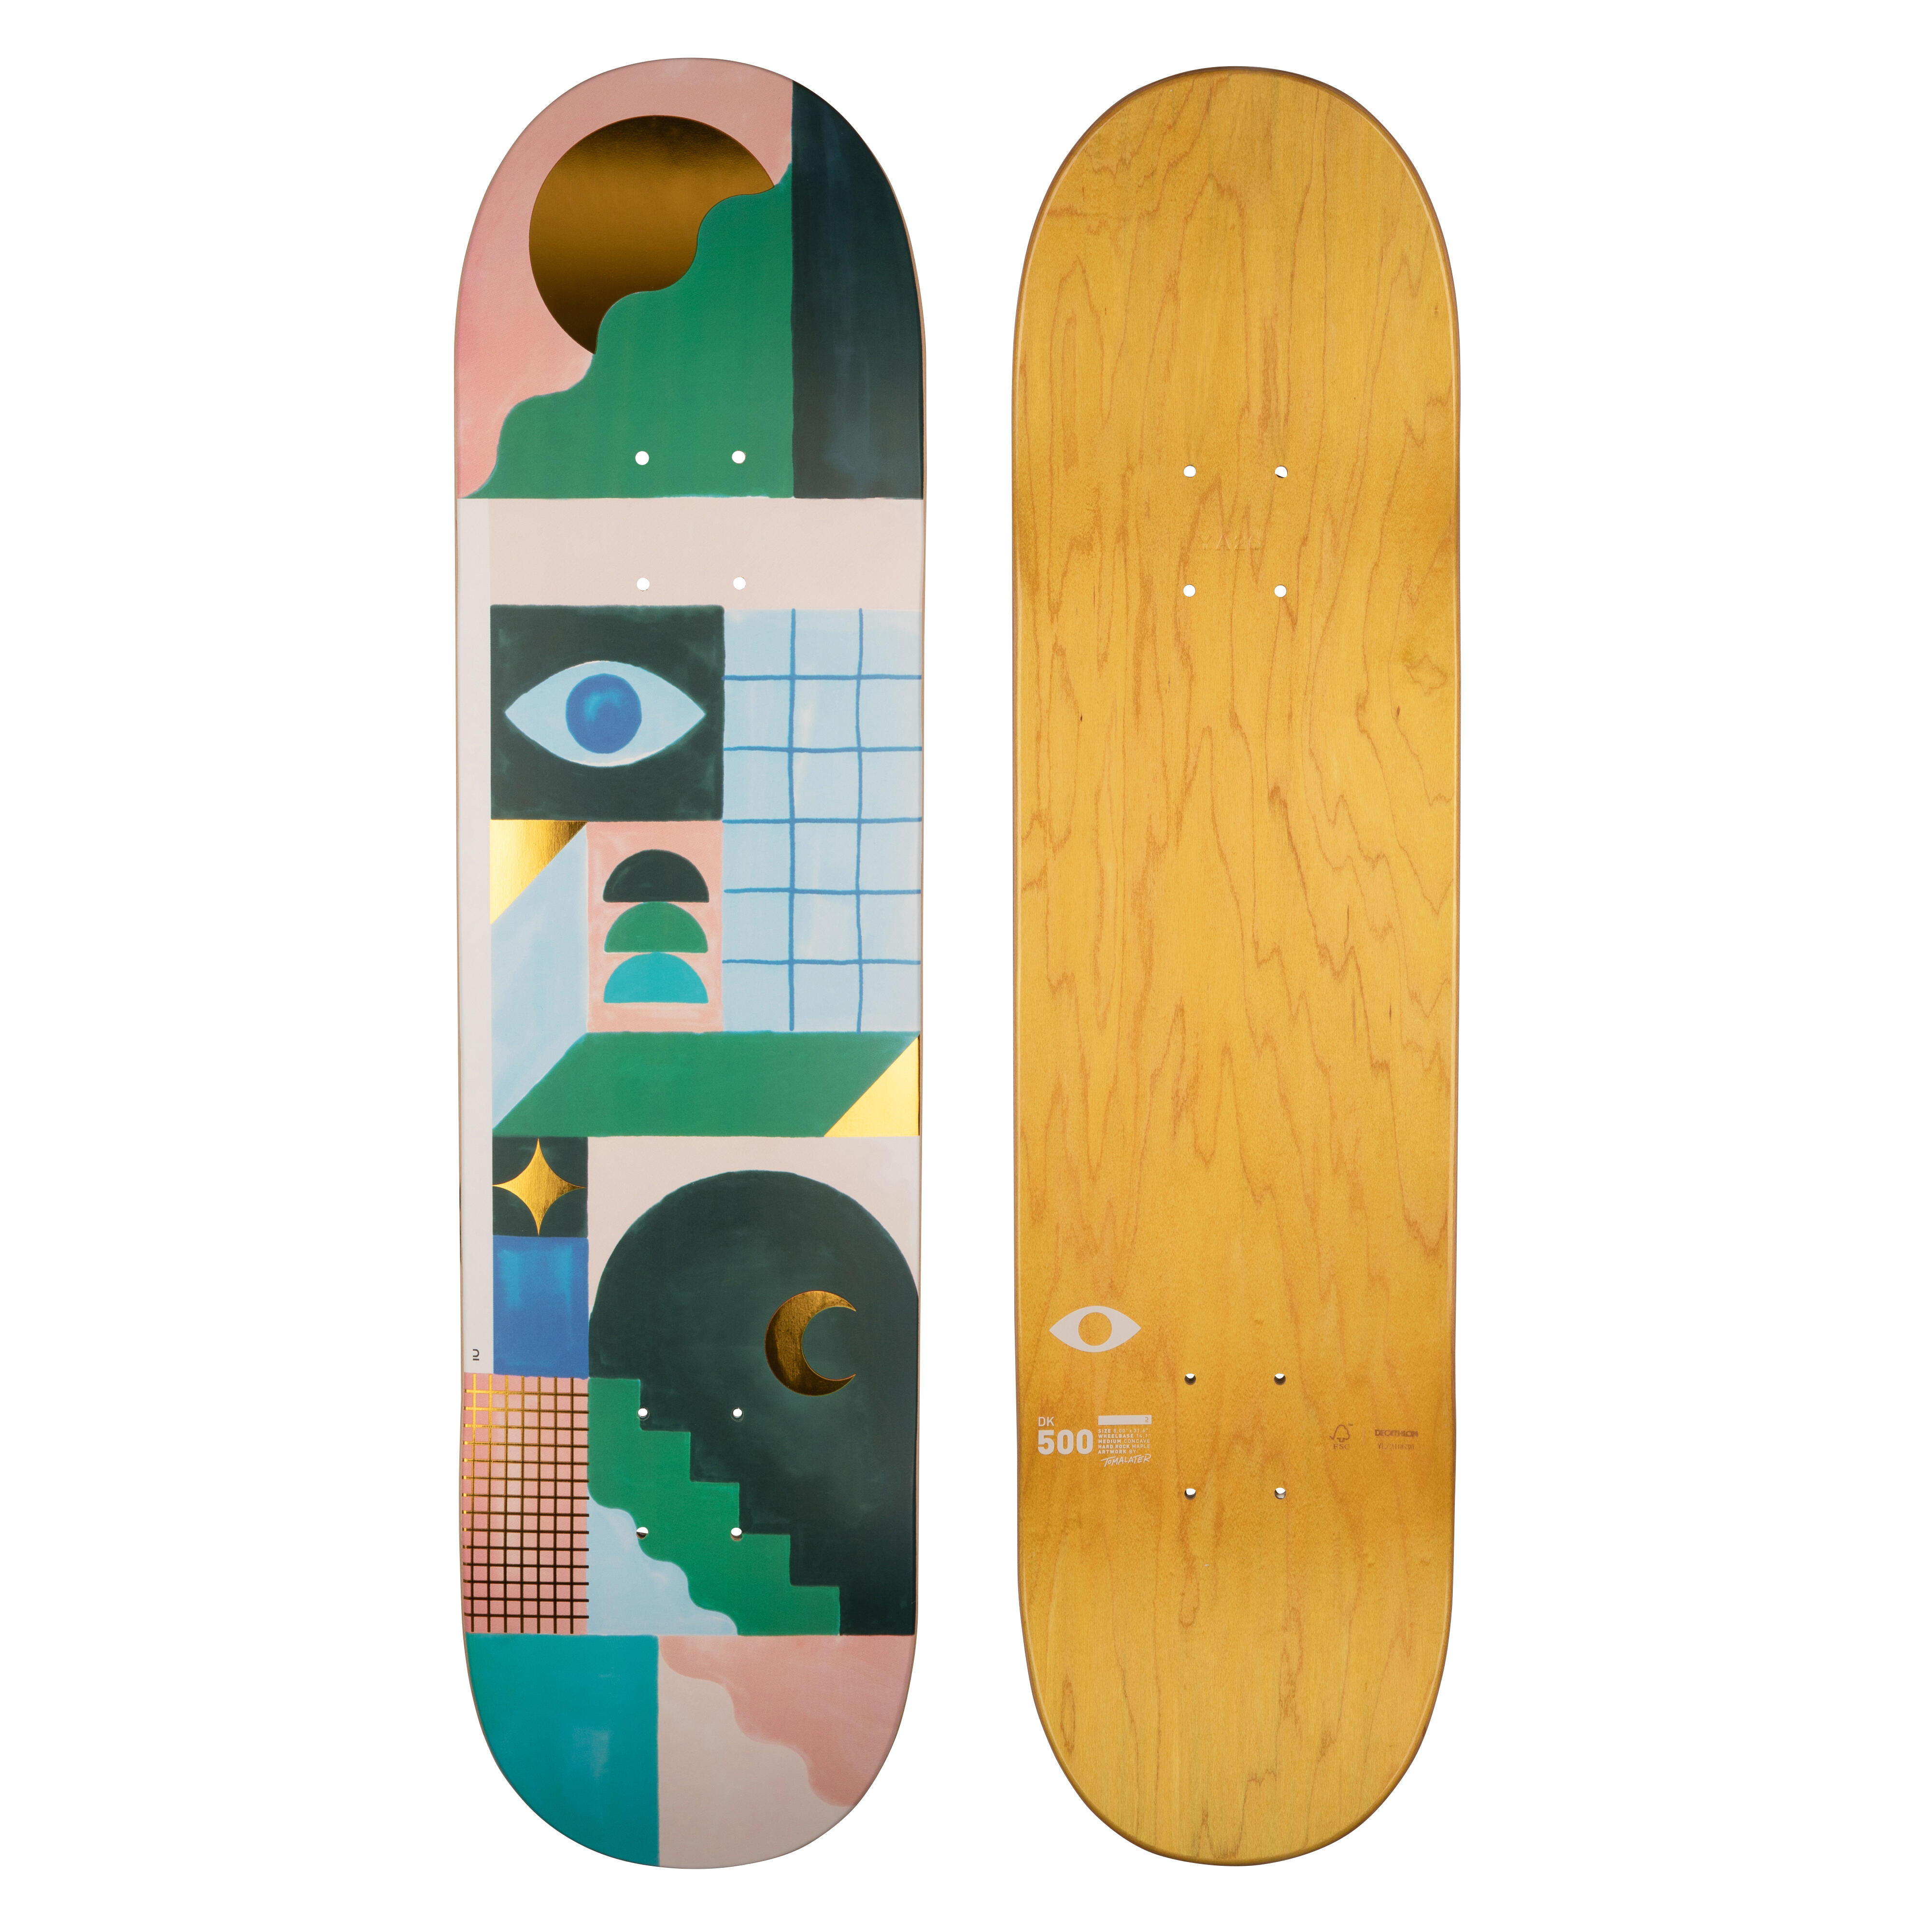 Placă skateboard DK500 Mărimea 8″Grafică de @TOMALATER @TOMALATER imagine 2022